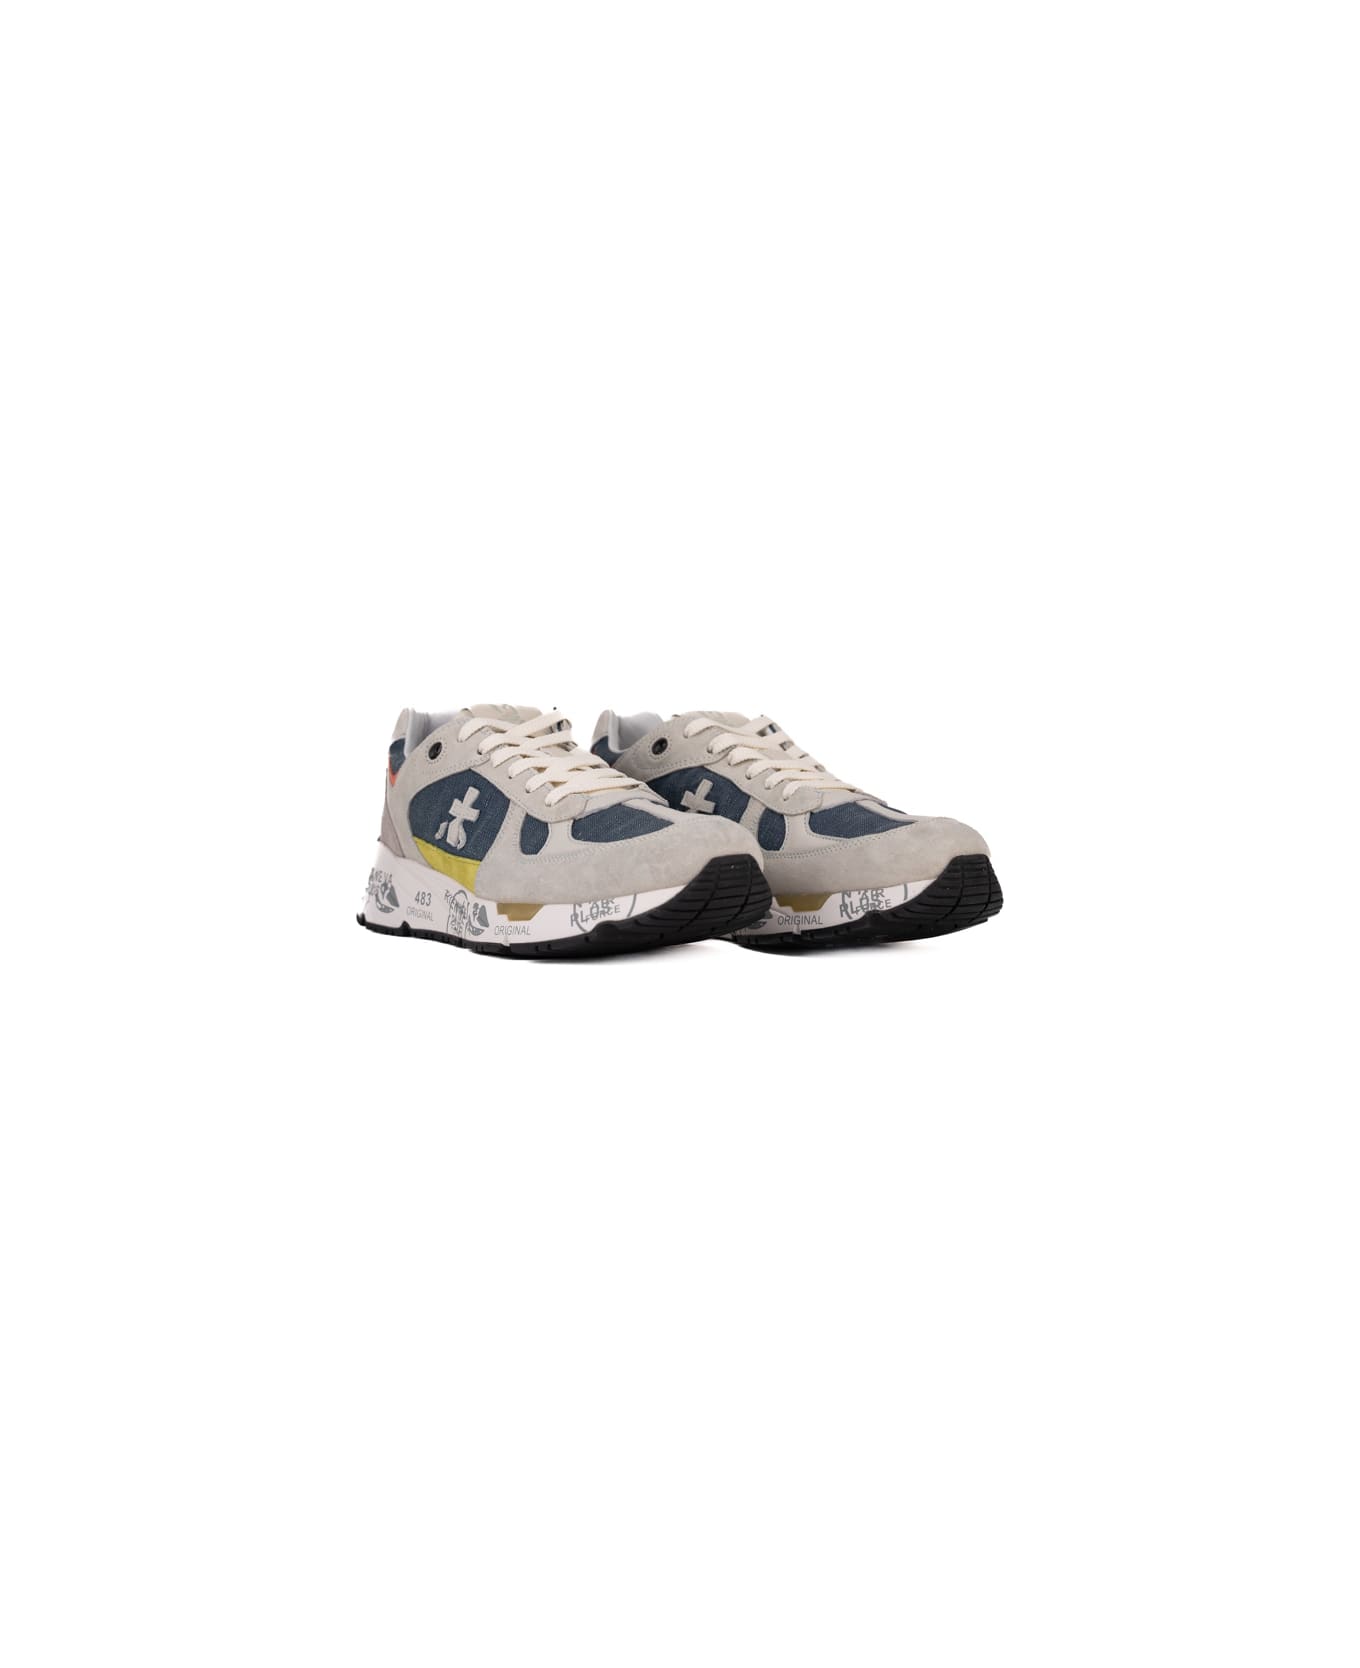 Premiata Mase 6623 Sneakers - Grigio/blu